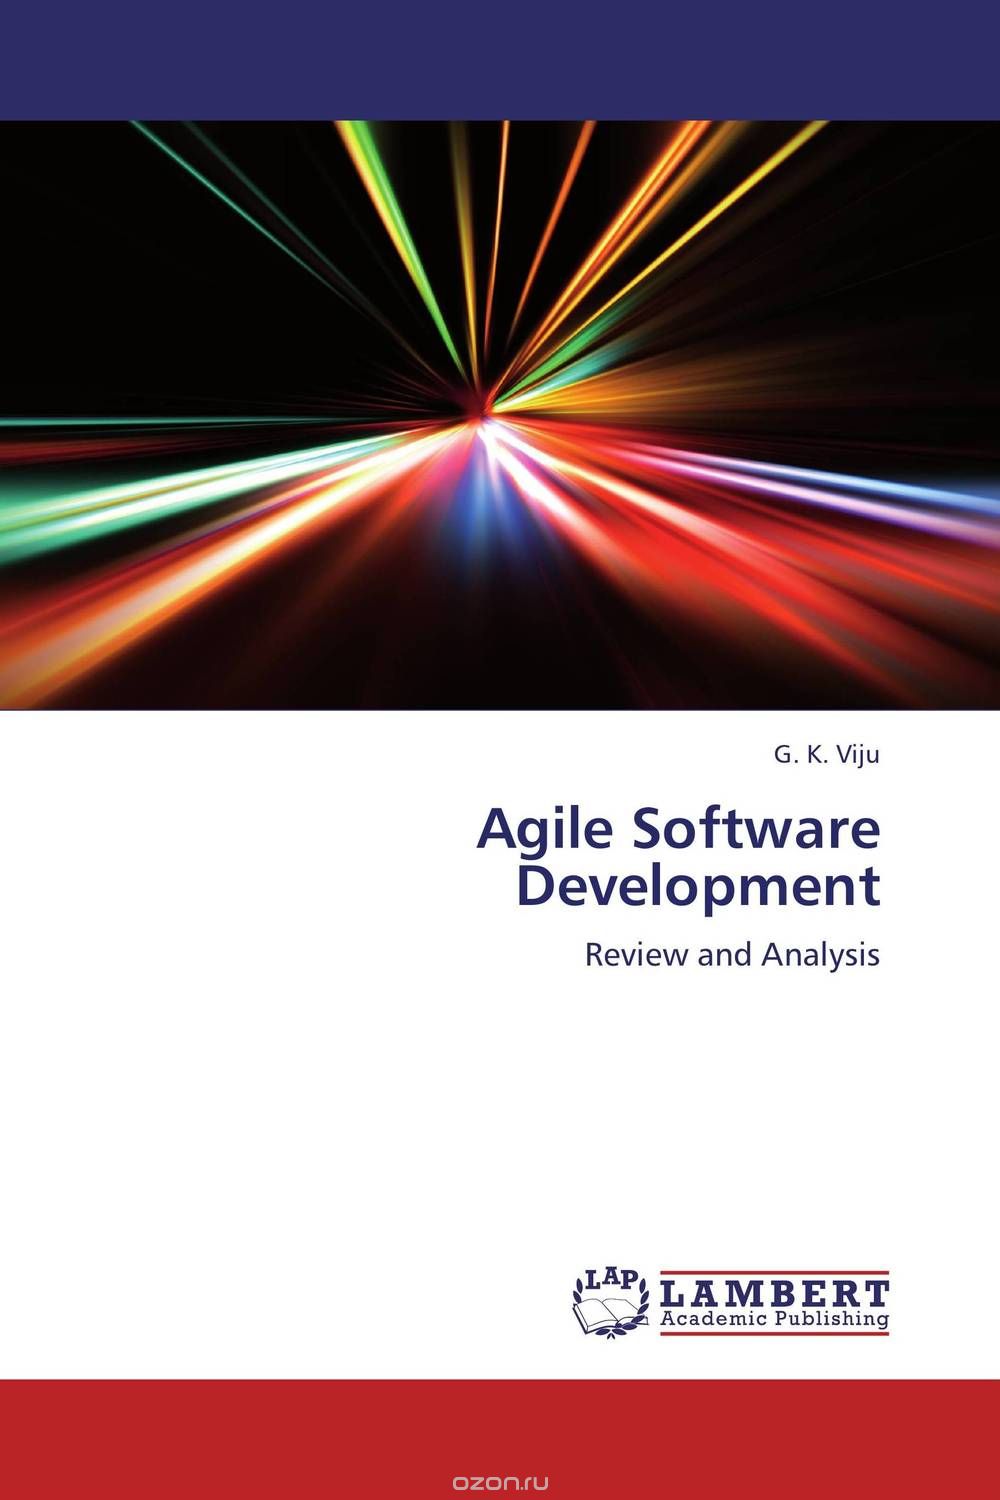 Скачать книгу "Agile Software Development"